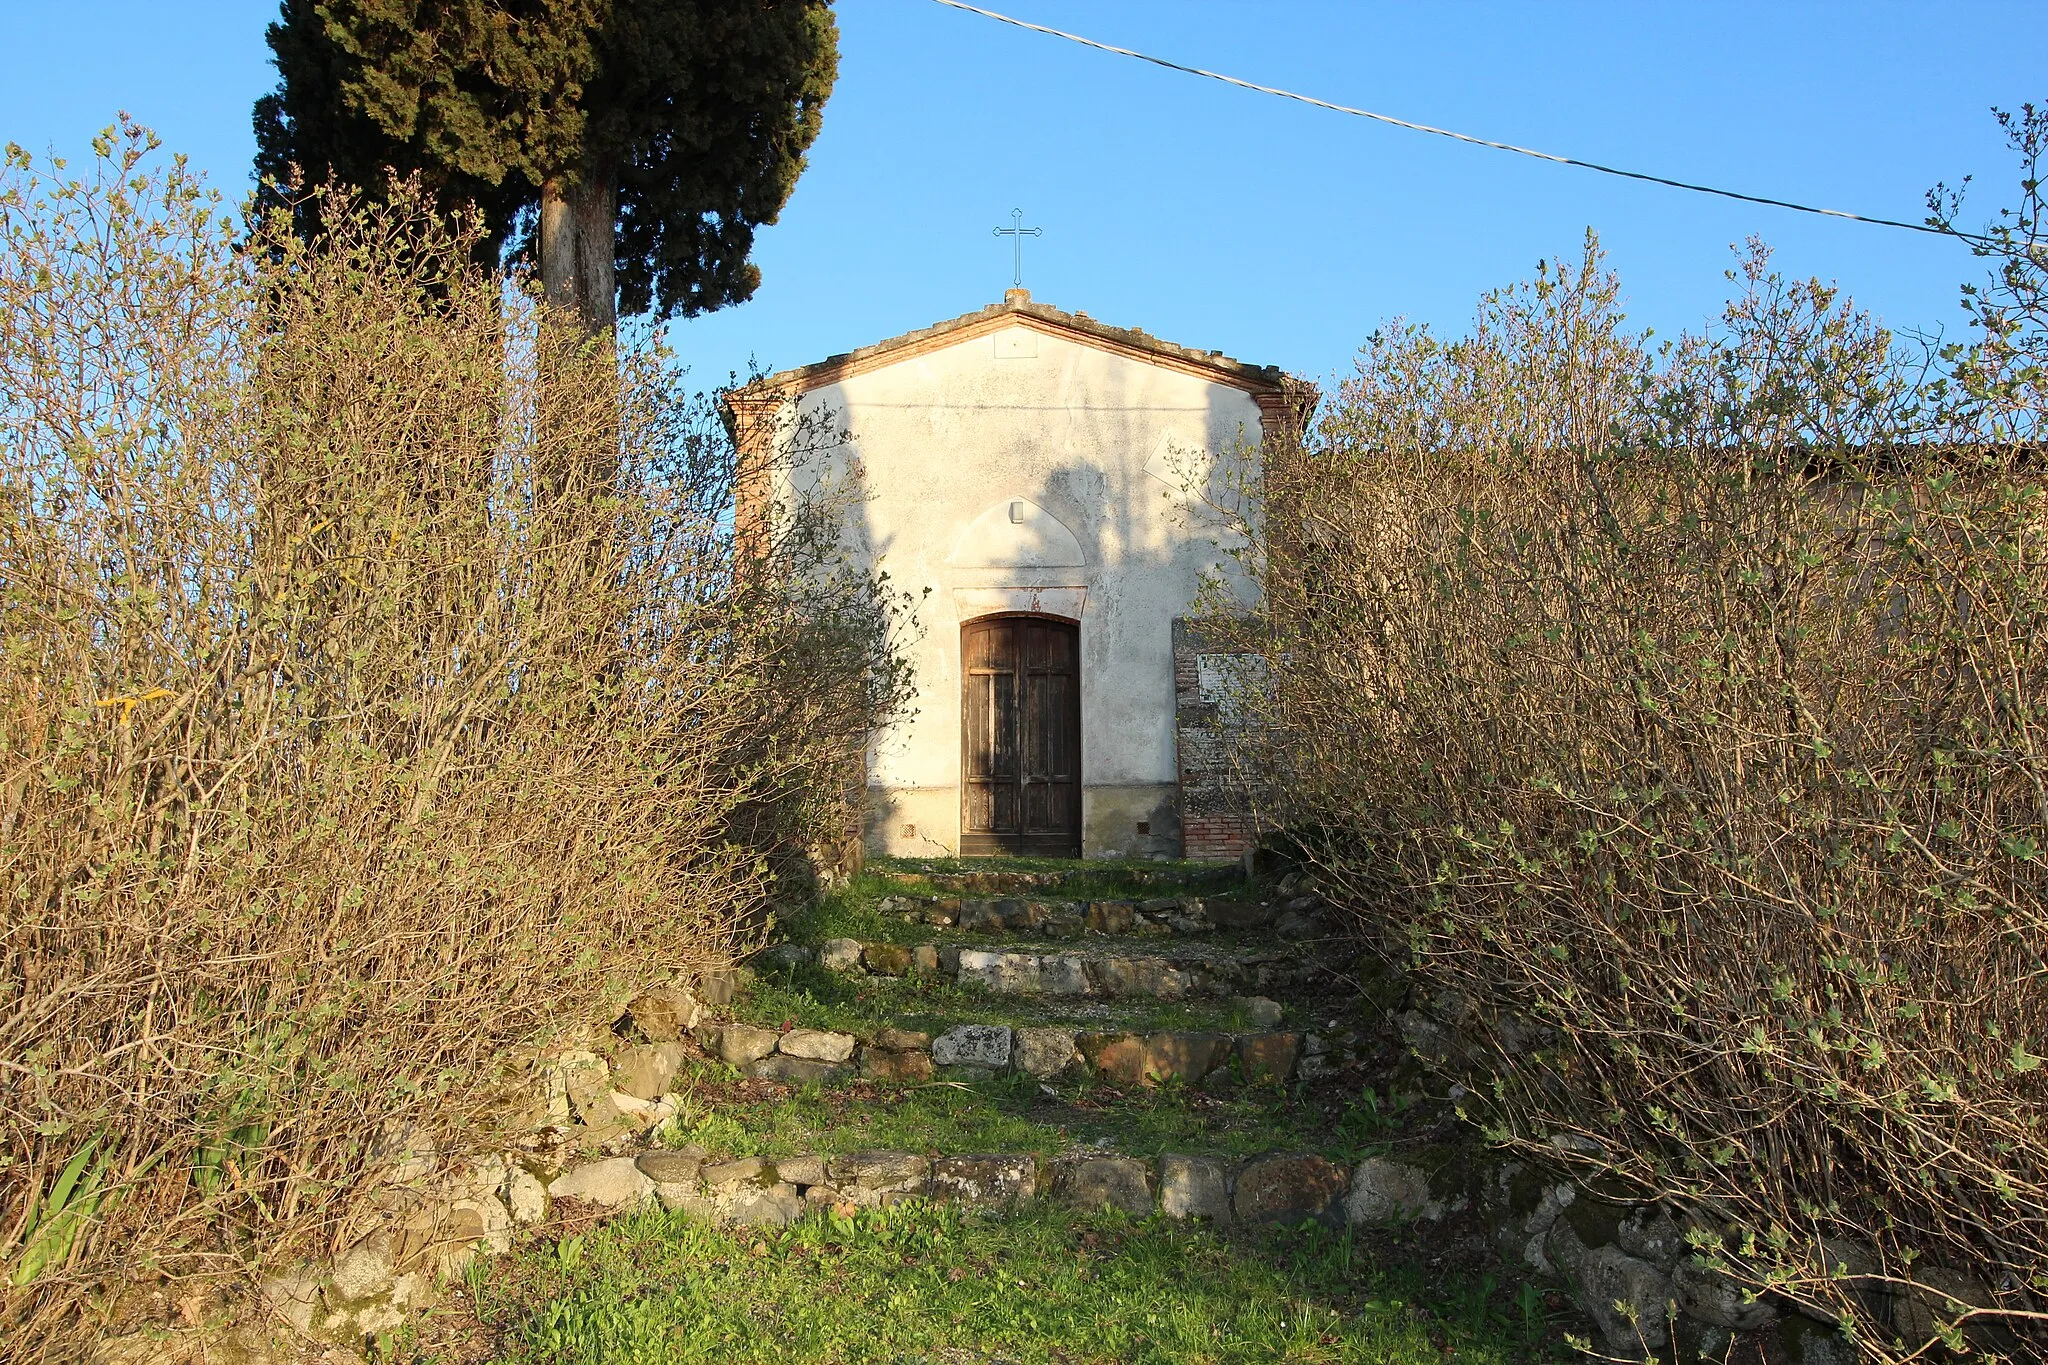 Photo showing: Church San Pietro Apostolo, Macciano, hamlet of Chiusi, Province of Siena, Tuscany, Italy